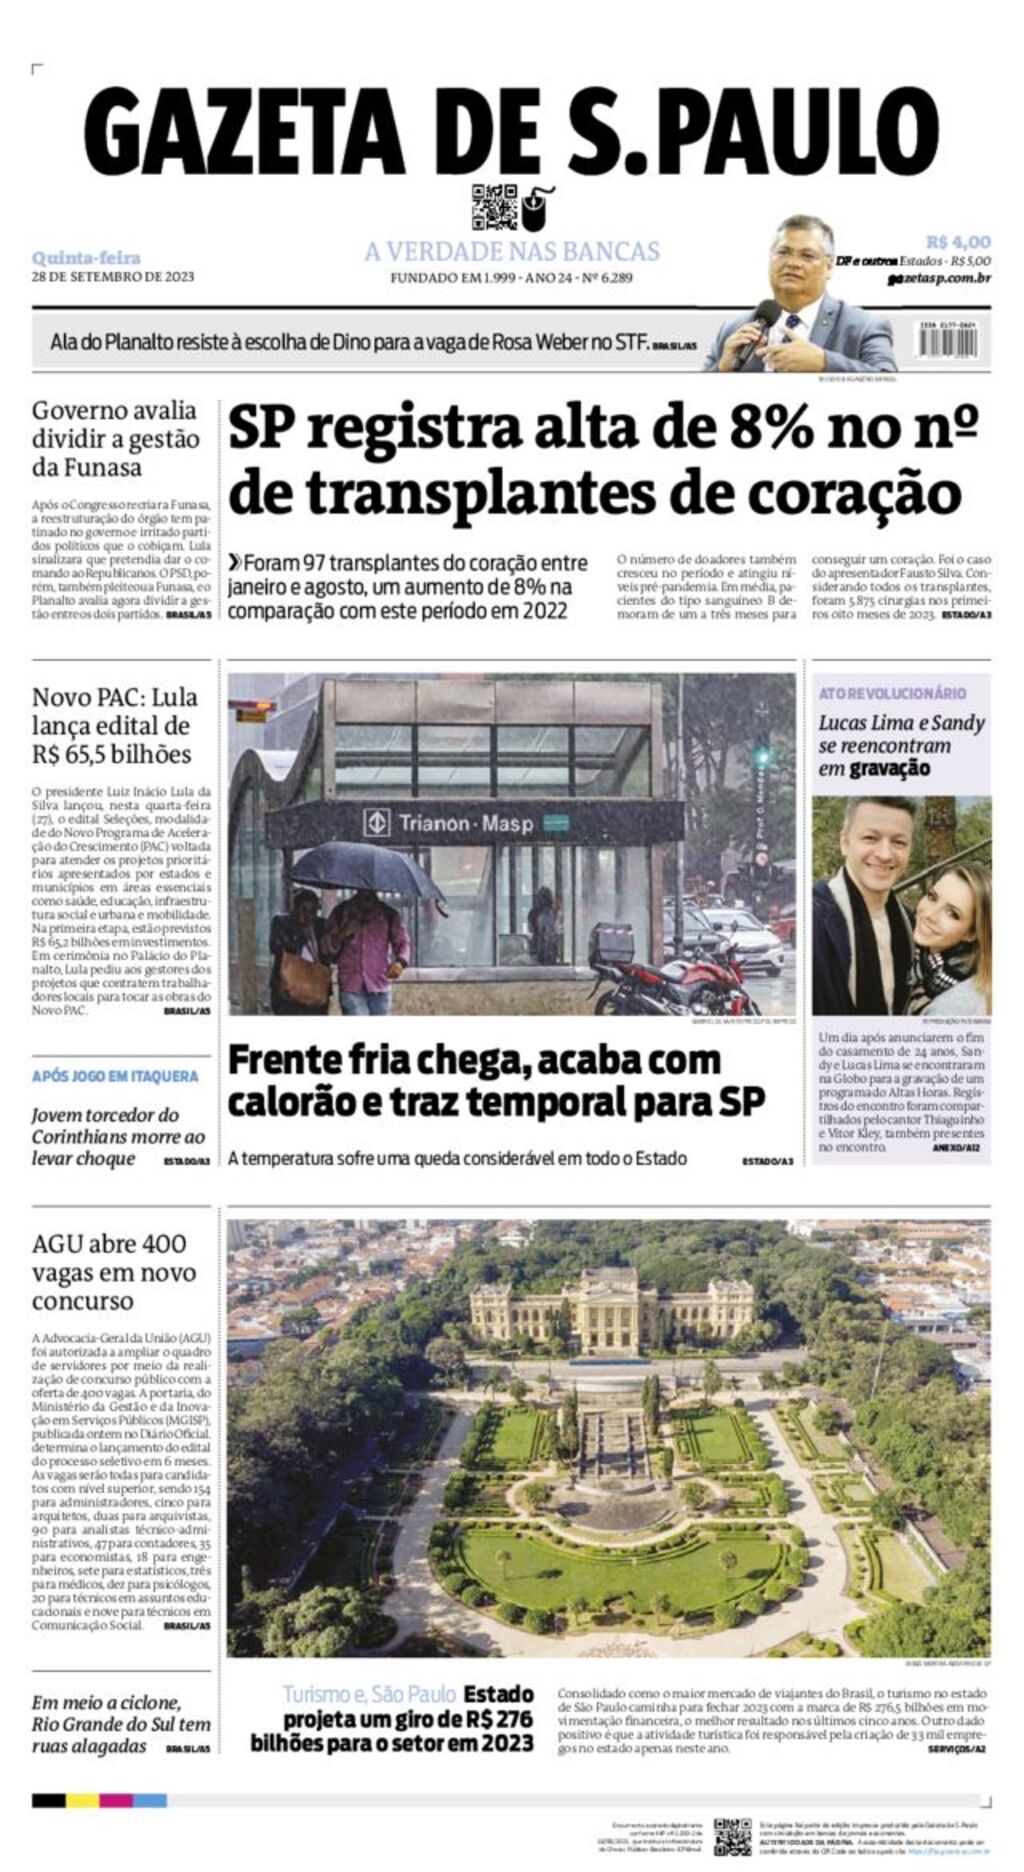 Jornal O Jogo tem novo site